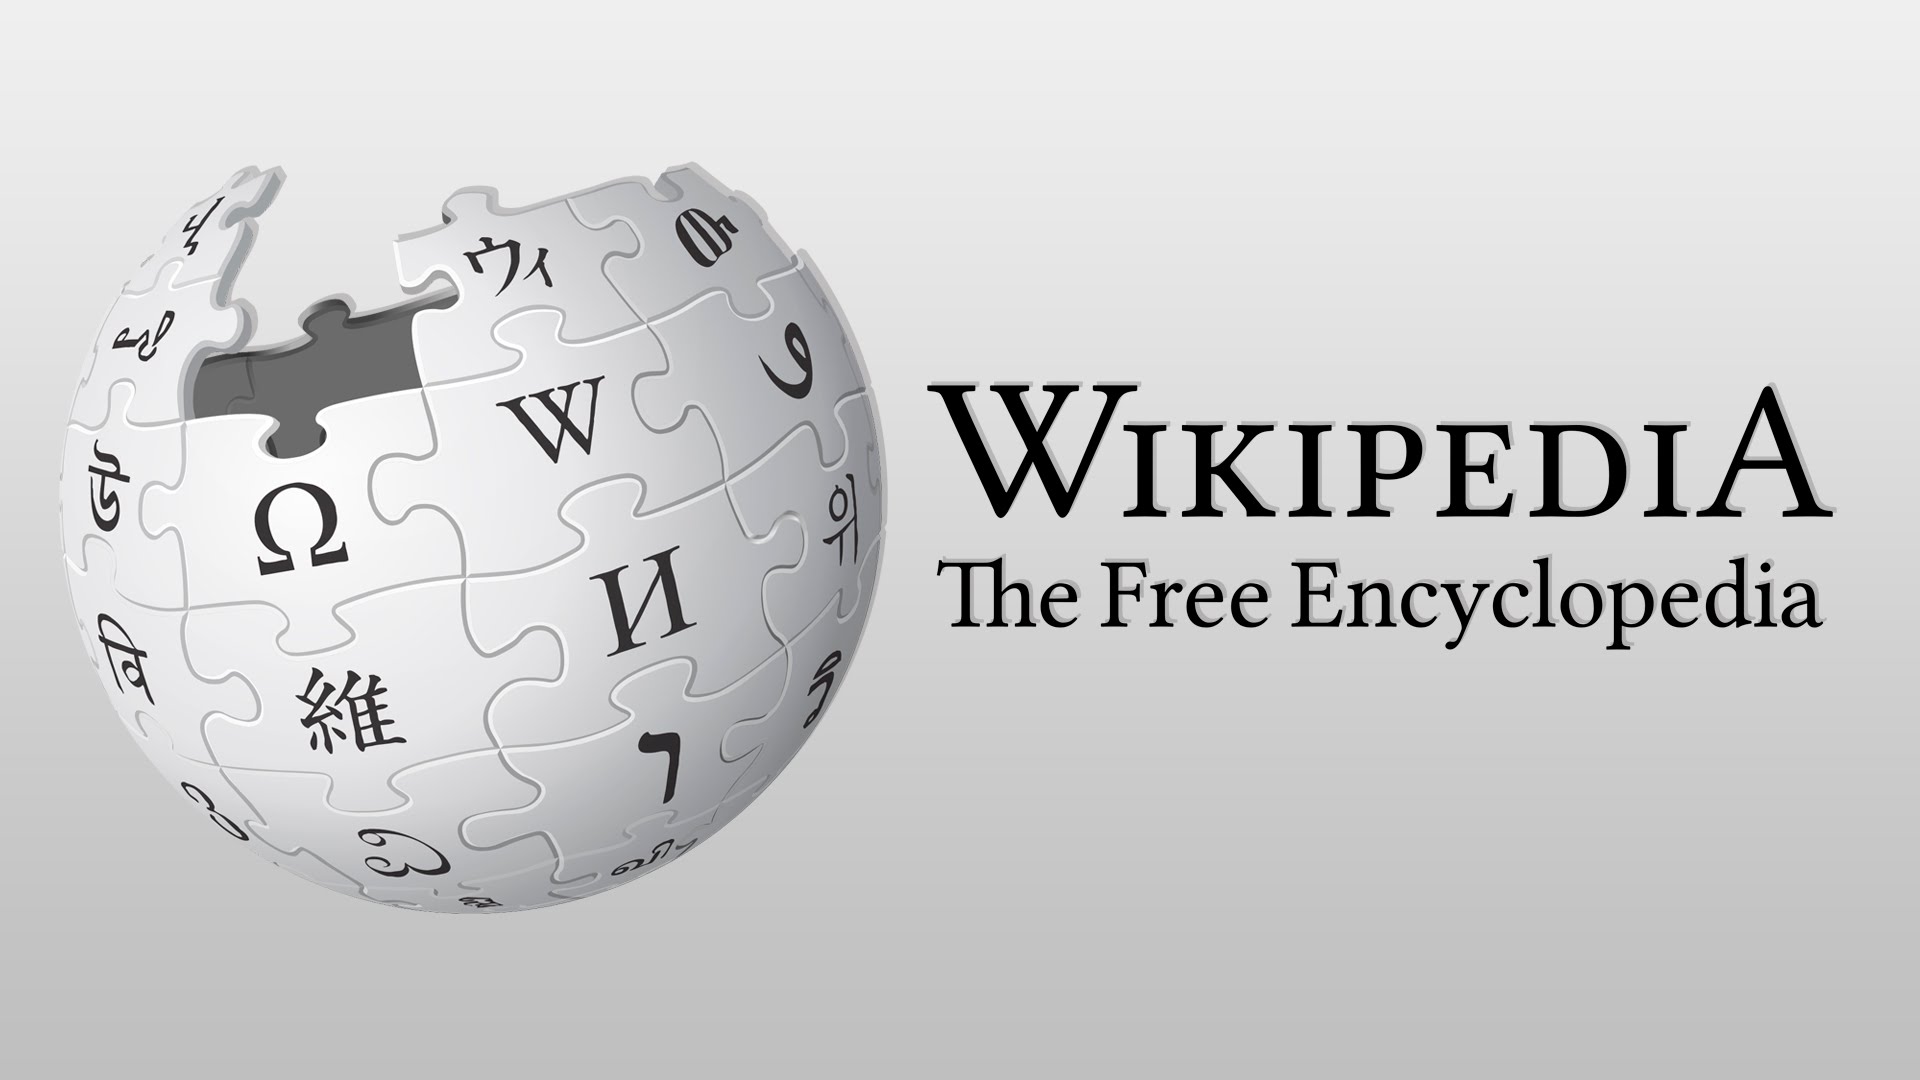 Wikipedia güvenilirlik konusunda